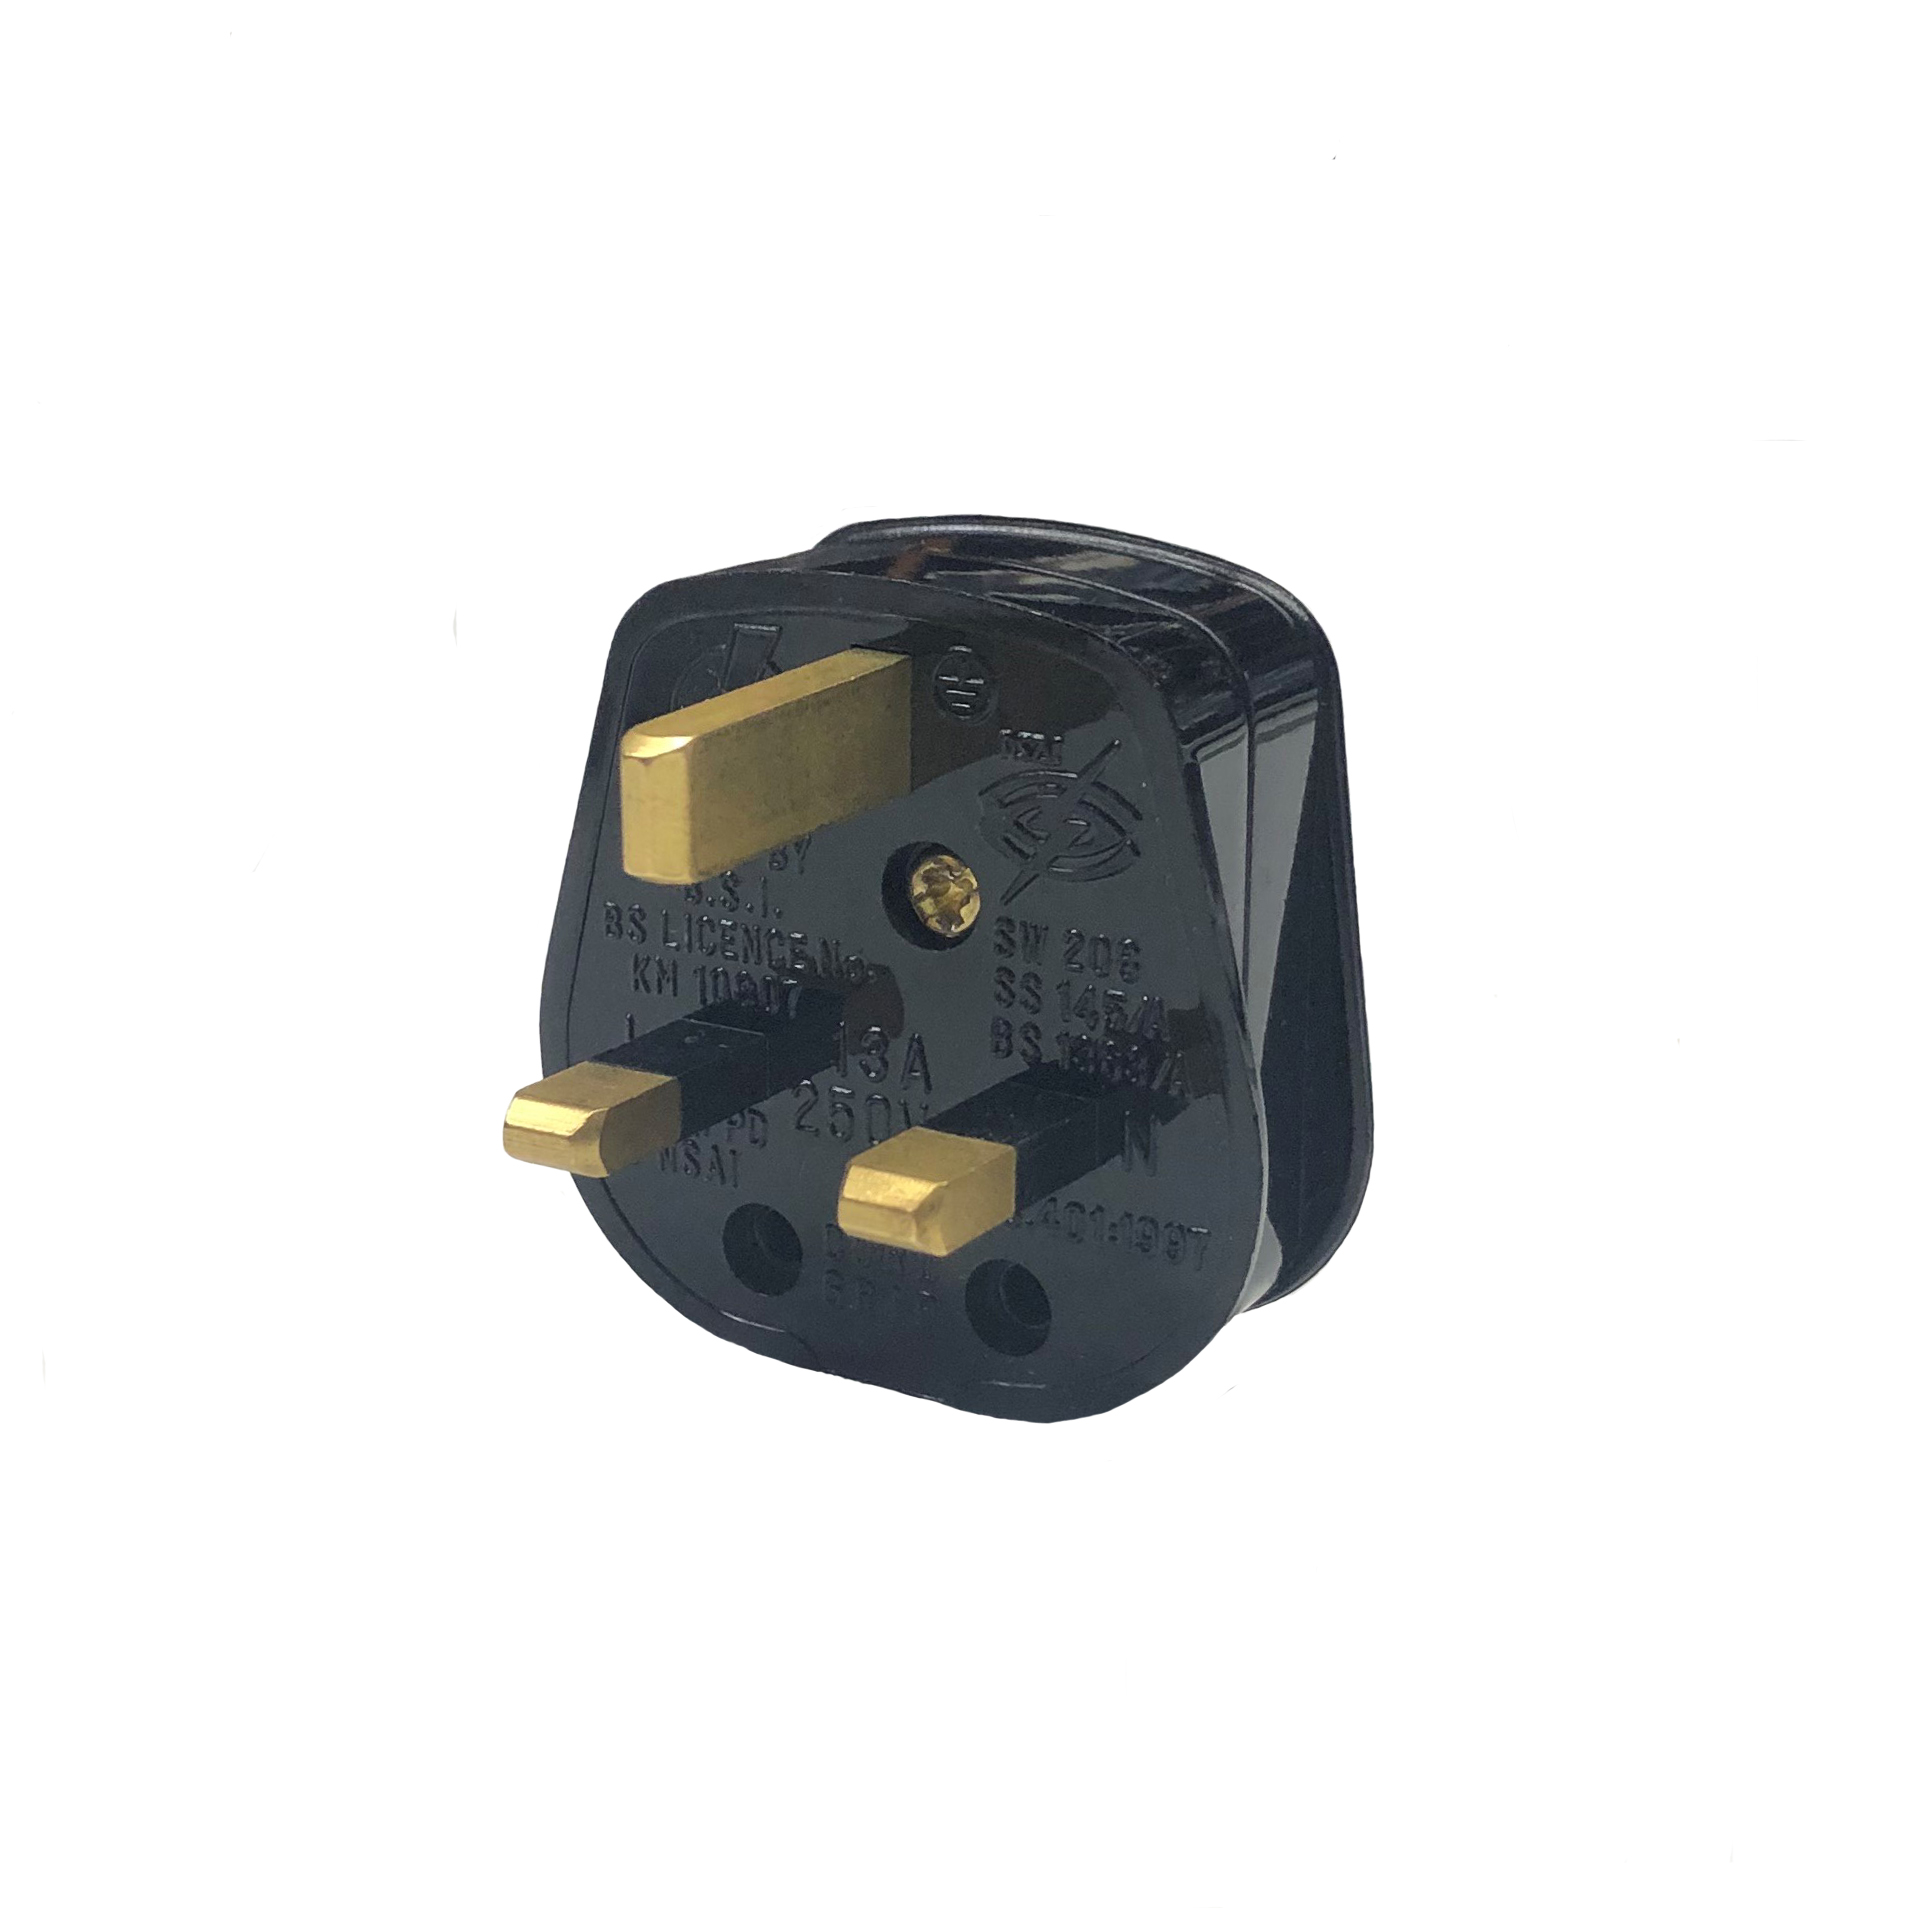 UK 3 Pin 13A (3A Fused) BS1363 Plug Top | Flexform